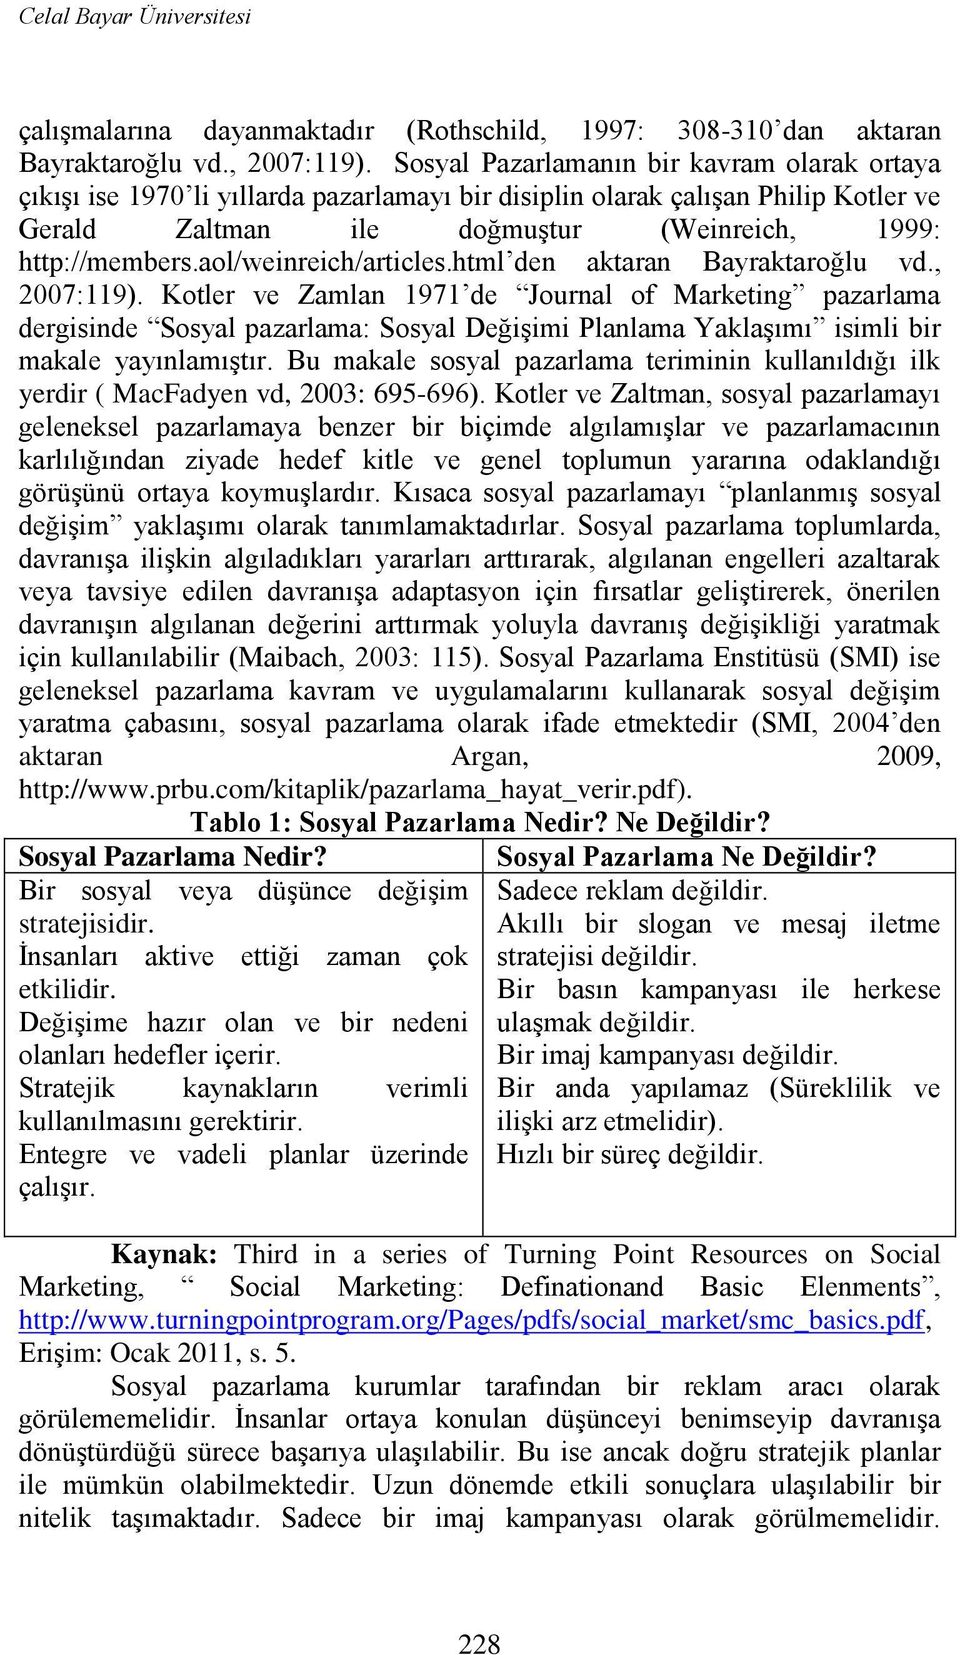 aol/weinreich/articles.html den aktaran Bayraktaroğlu vd., 2007:119).